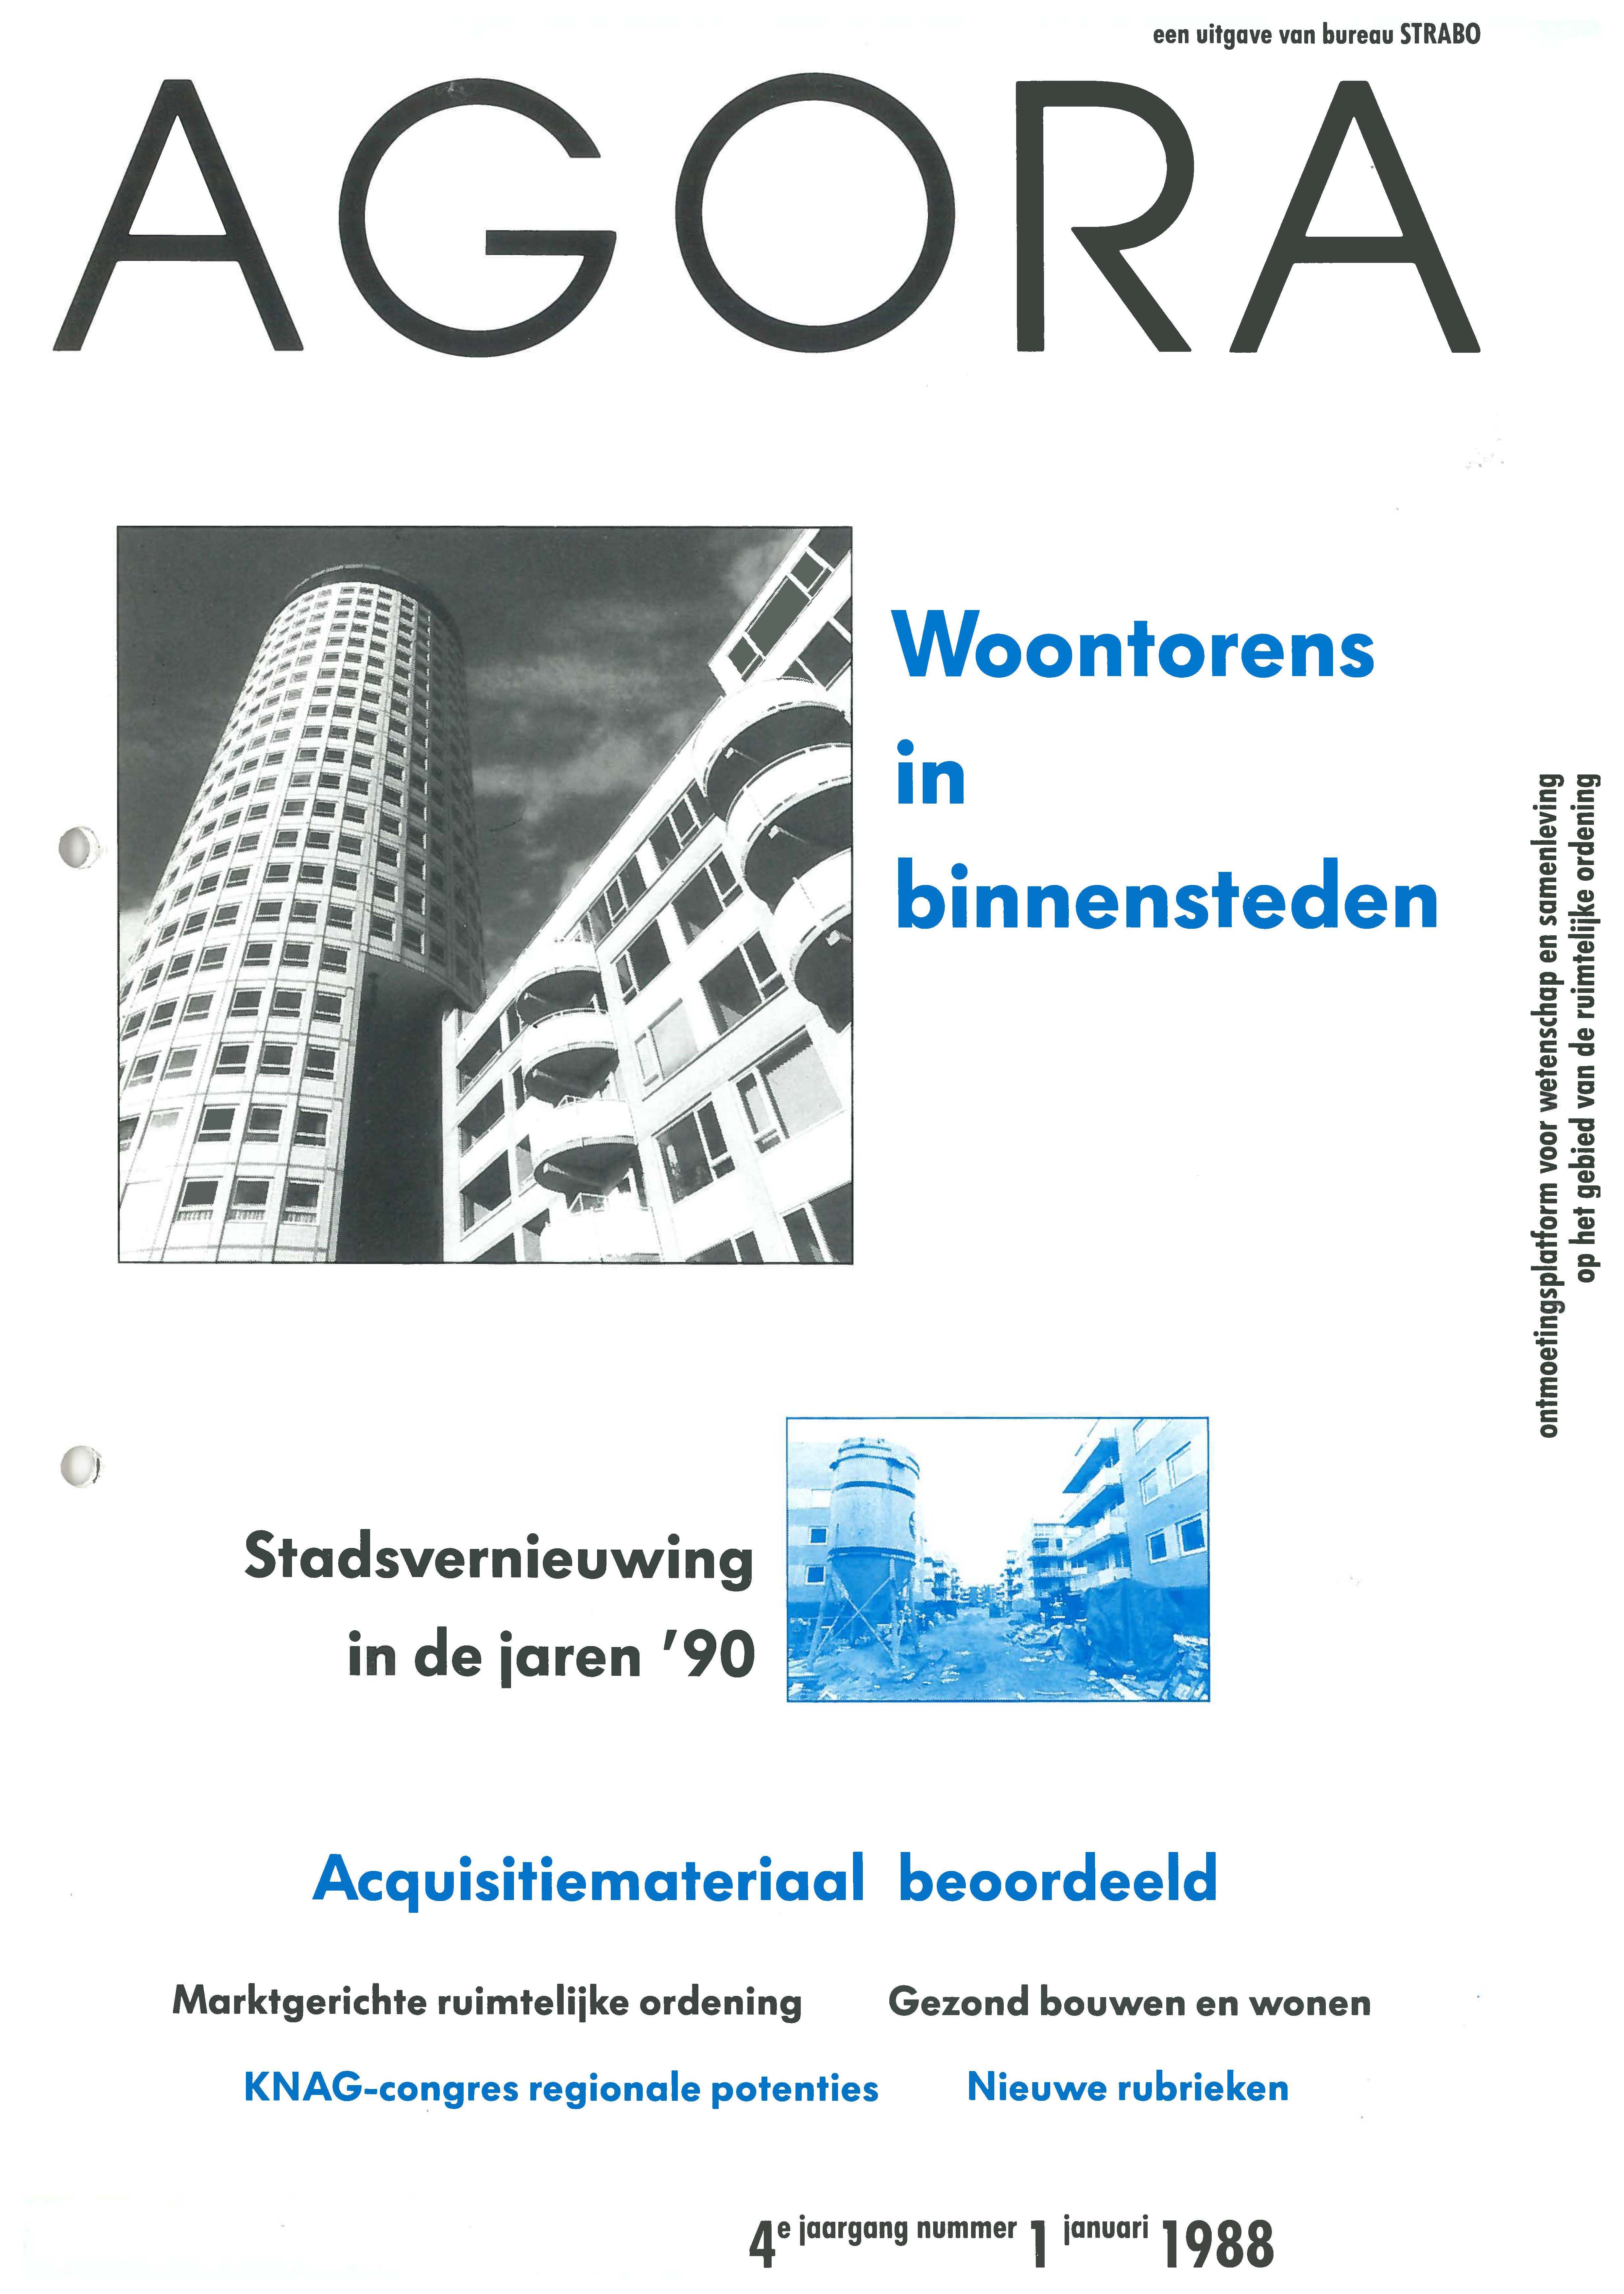 Volume 4 • Issue 1 • 1988 • 'Woontorens in binnensteden' & 'Stadsvernieuwing in de jaren '90'